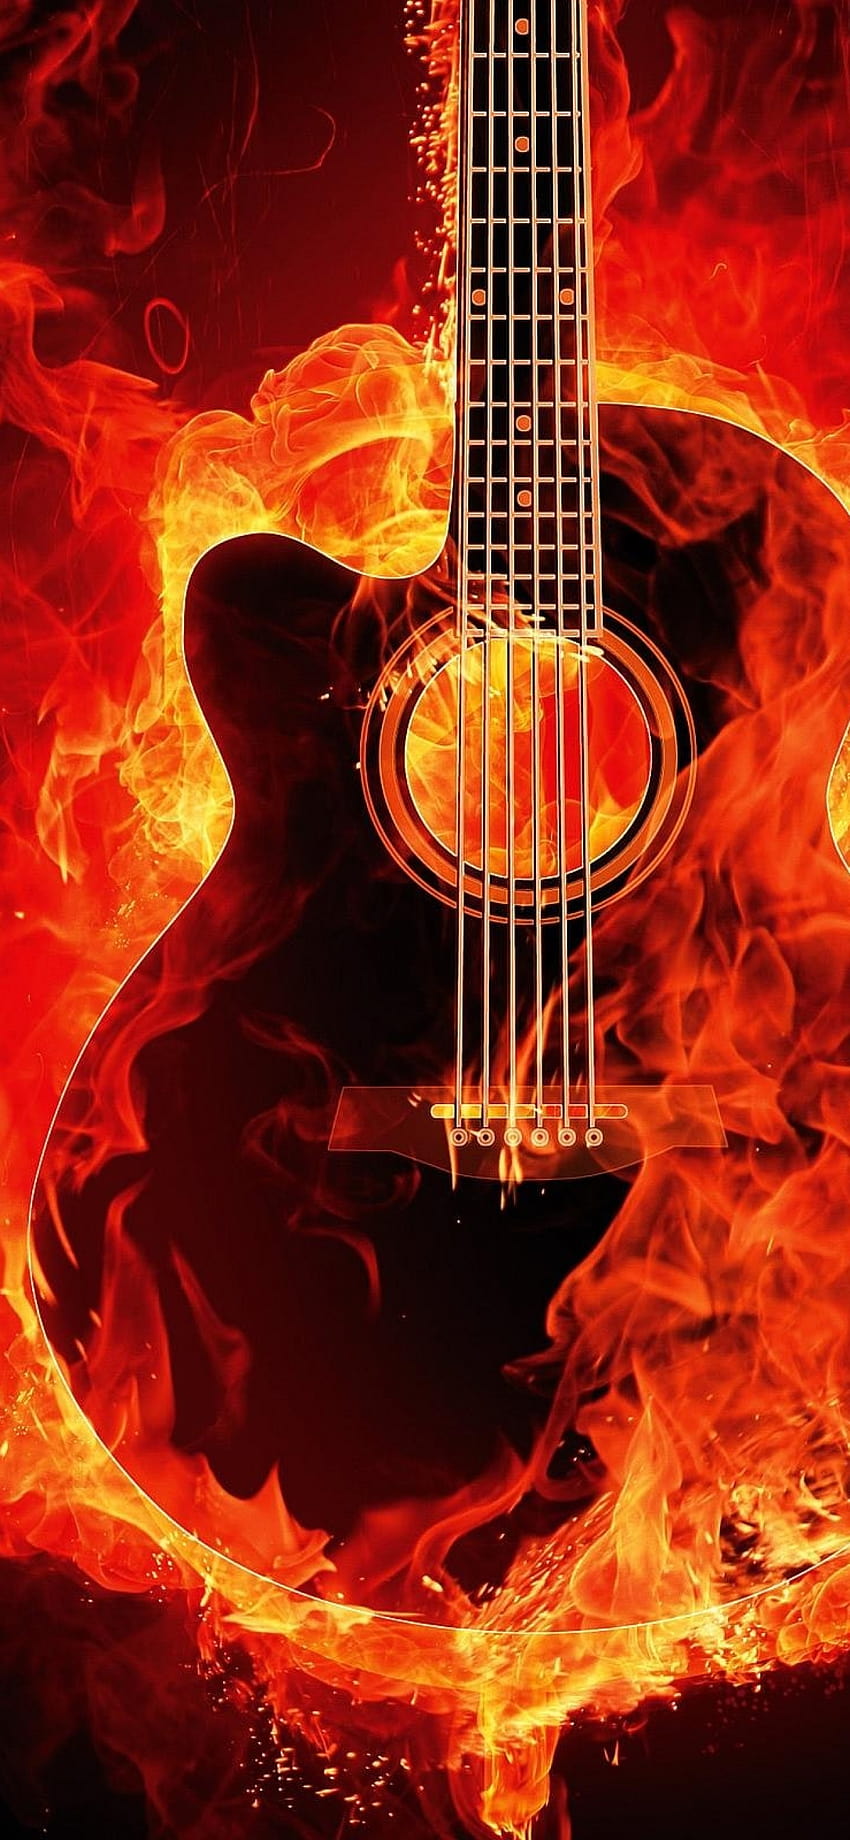 Flammende Gitarre, schwarzer Hintergrund, Musikinstrument, Feuer, schwarz/dunkel, brennende Gitarre HD-Handy-Hintergrundbild